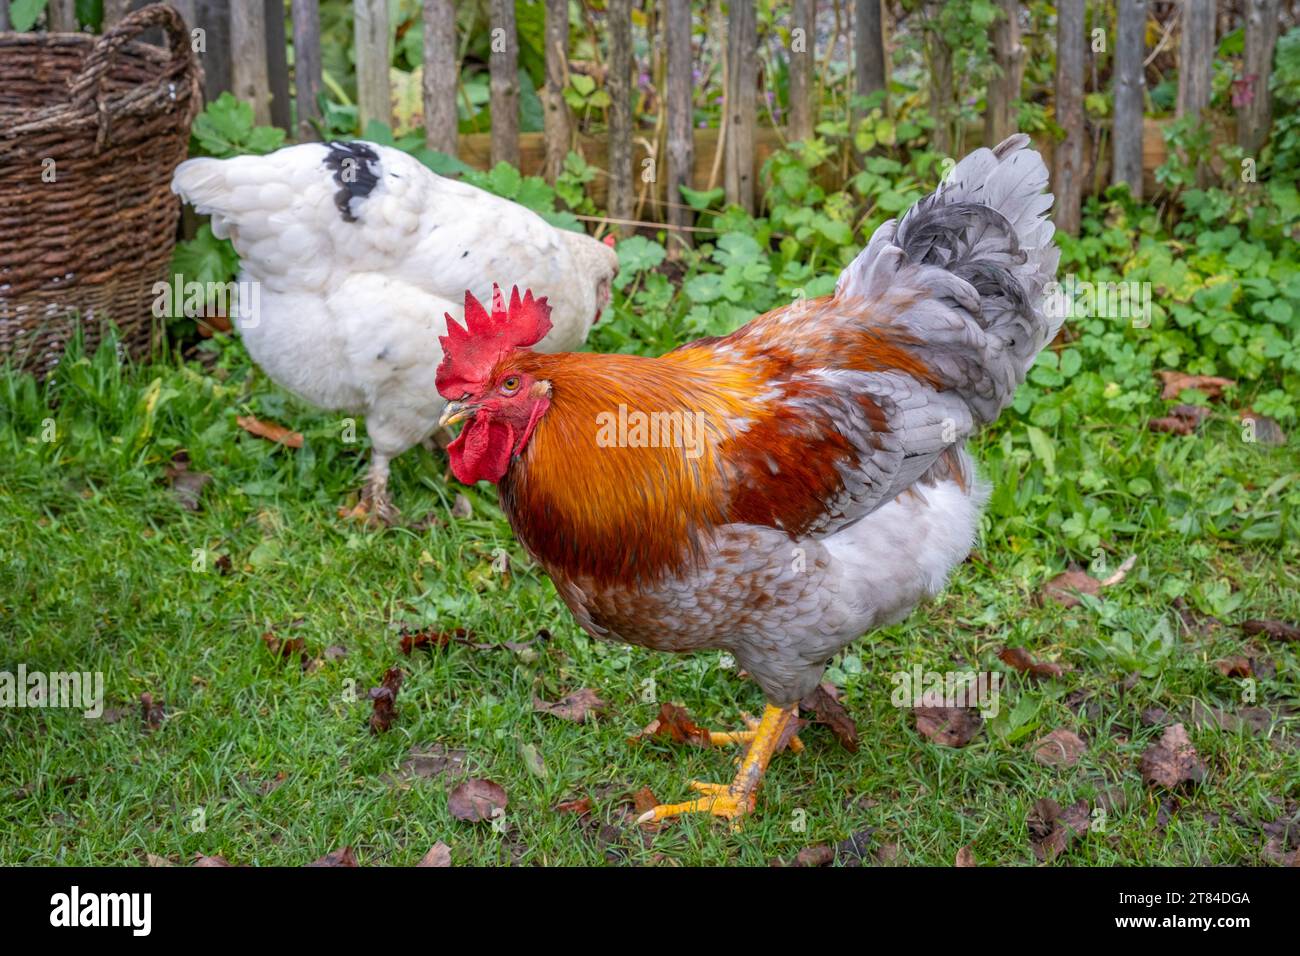 Ganso y pollo en un pueblo de agricultores en Alemania Foto de stock